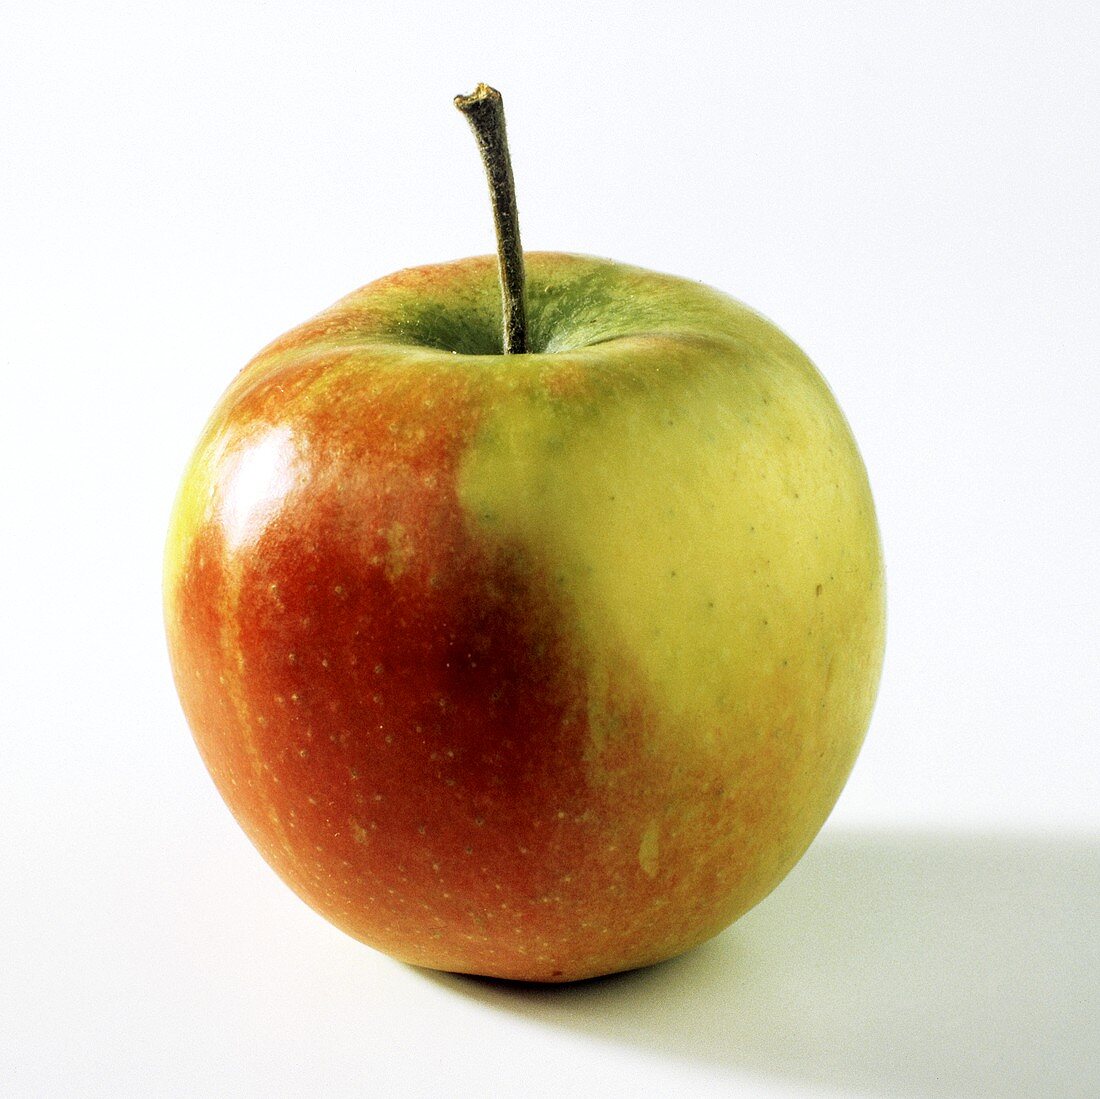 A Single McIntosh Apple